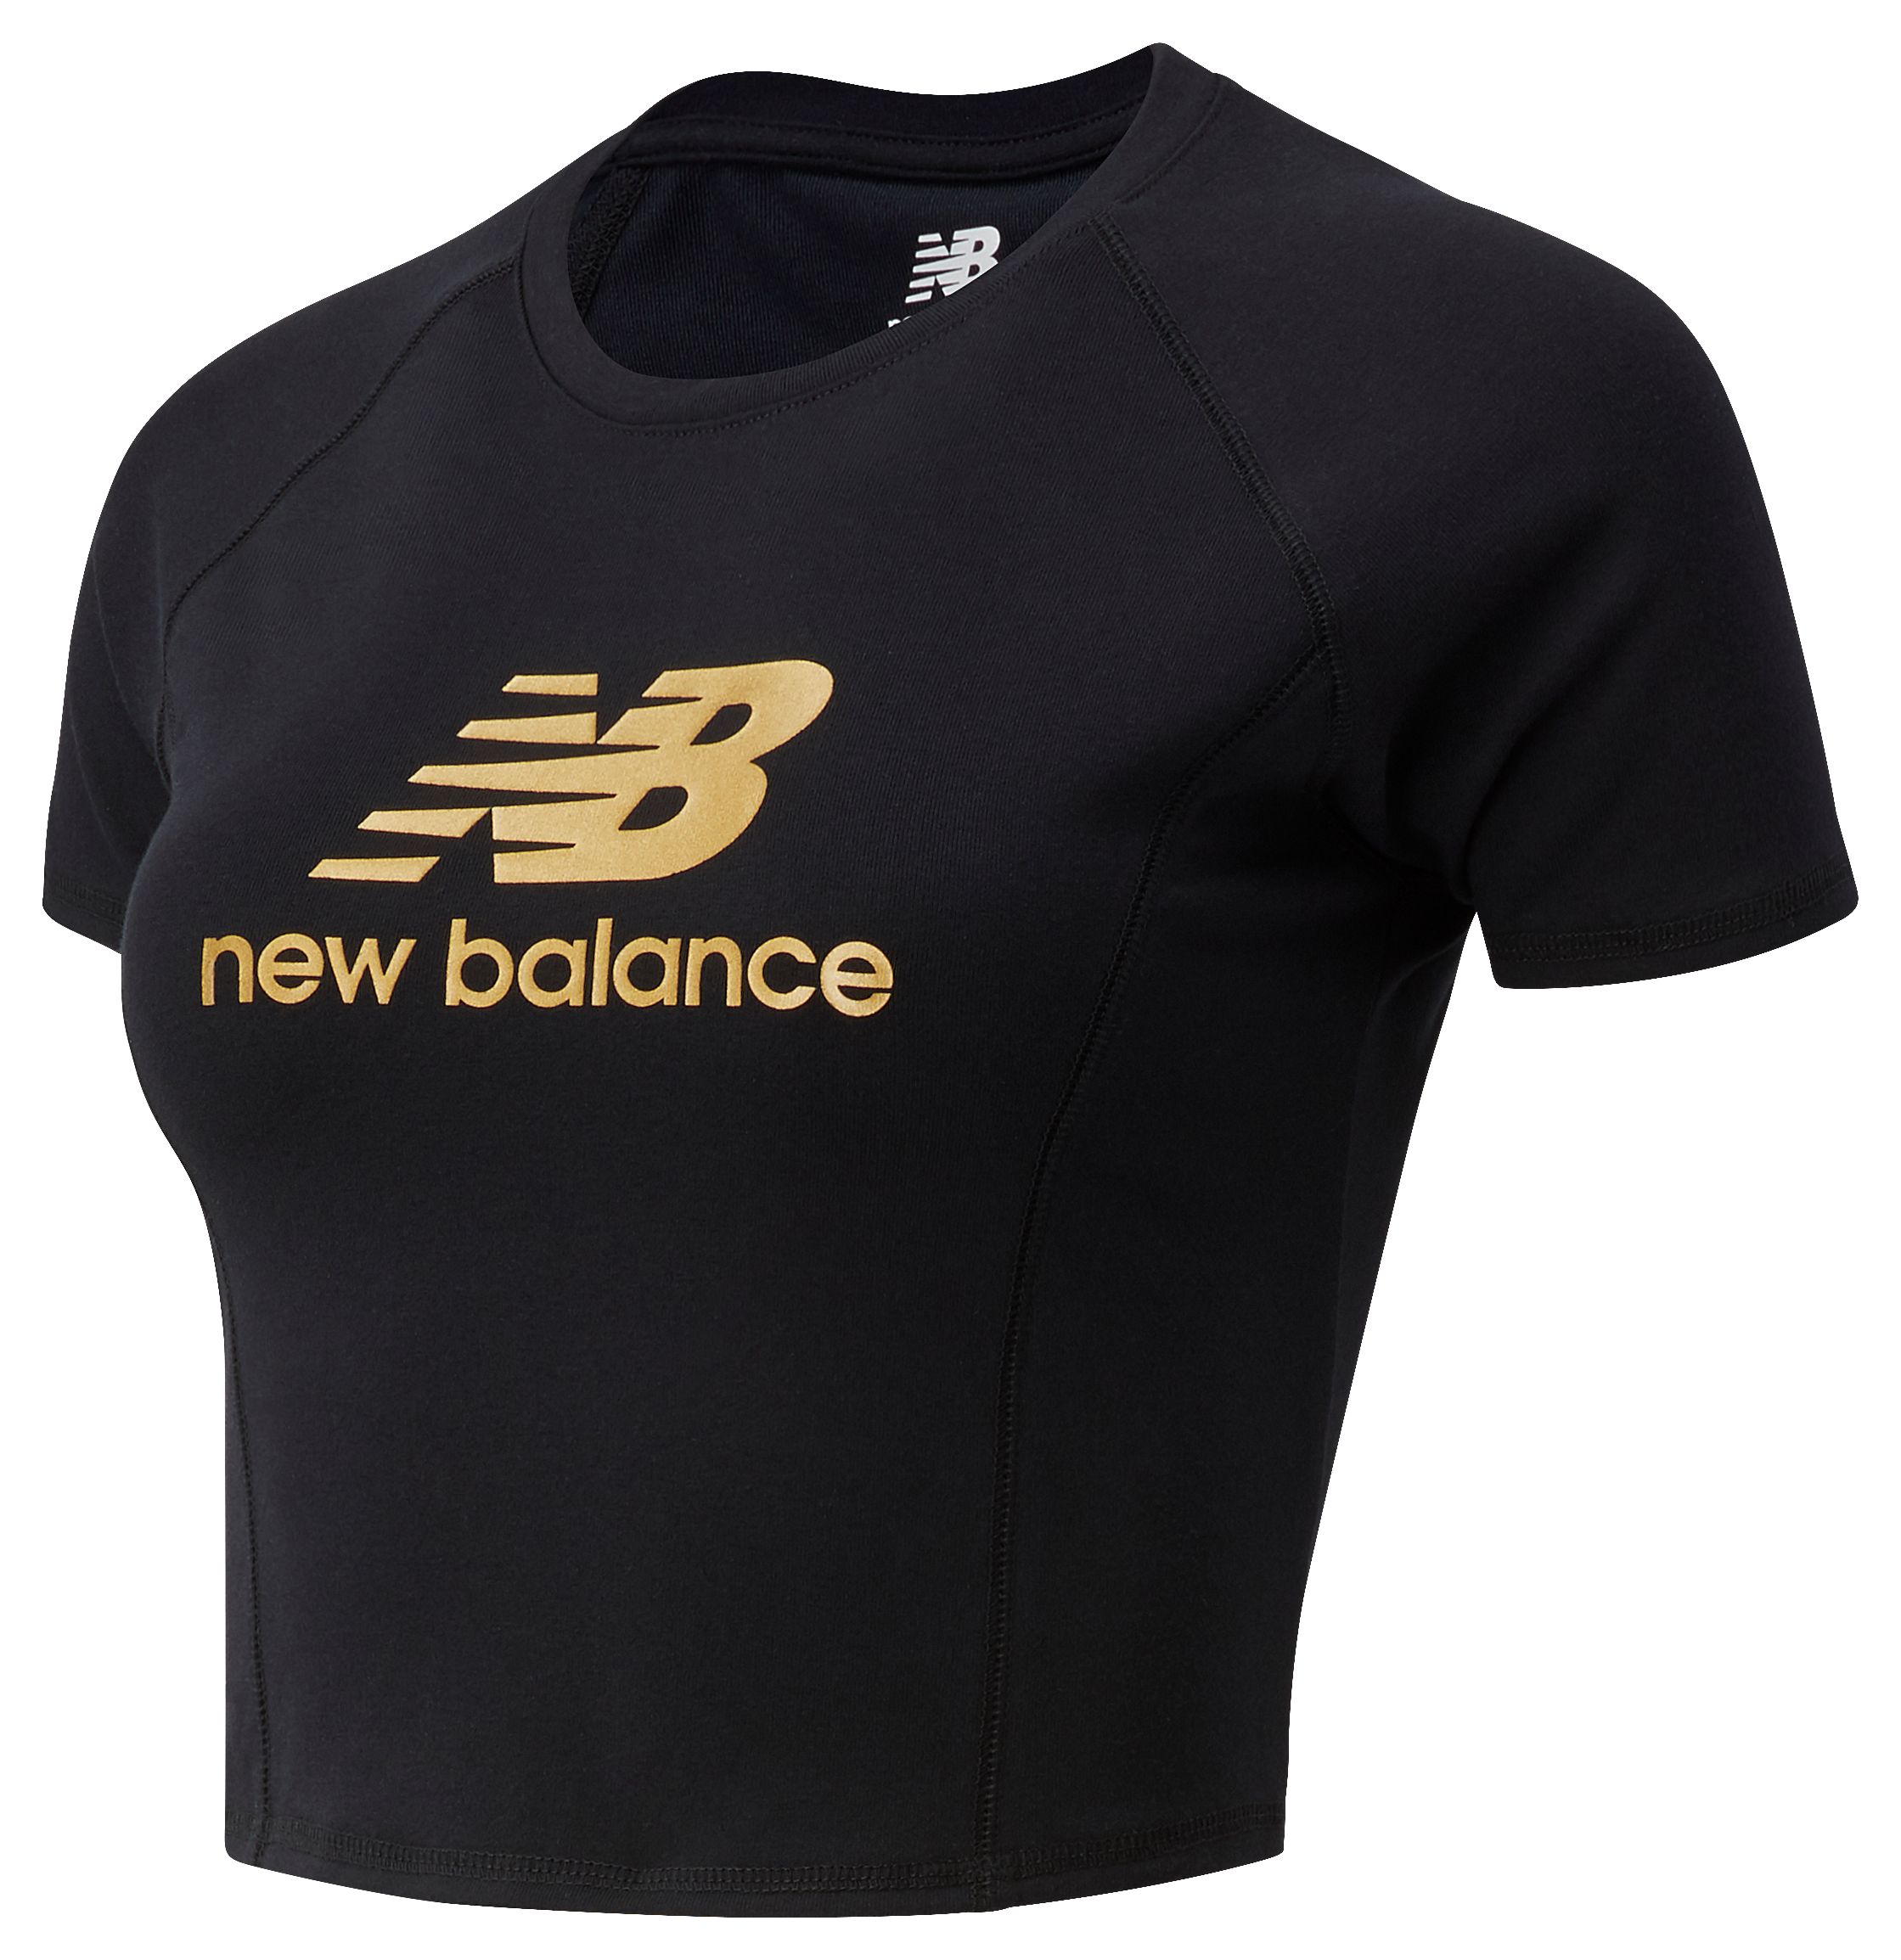 new balance womens shirts